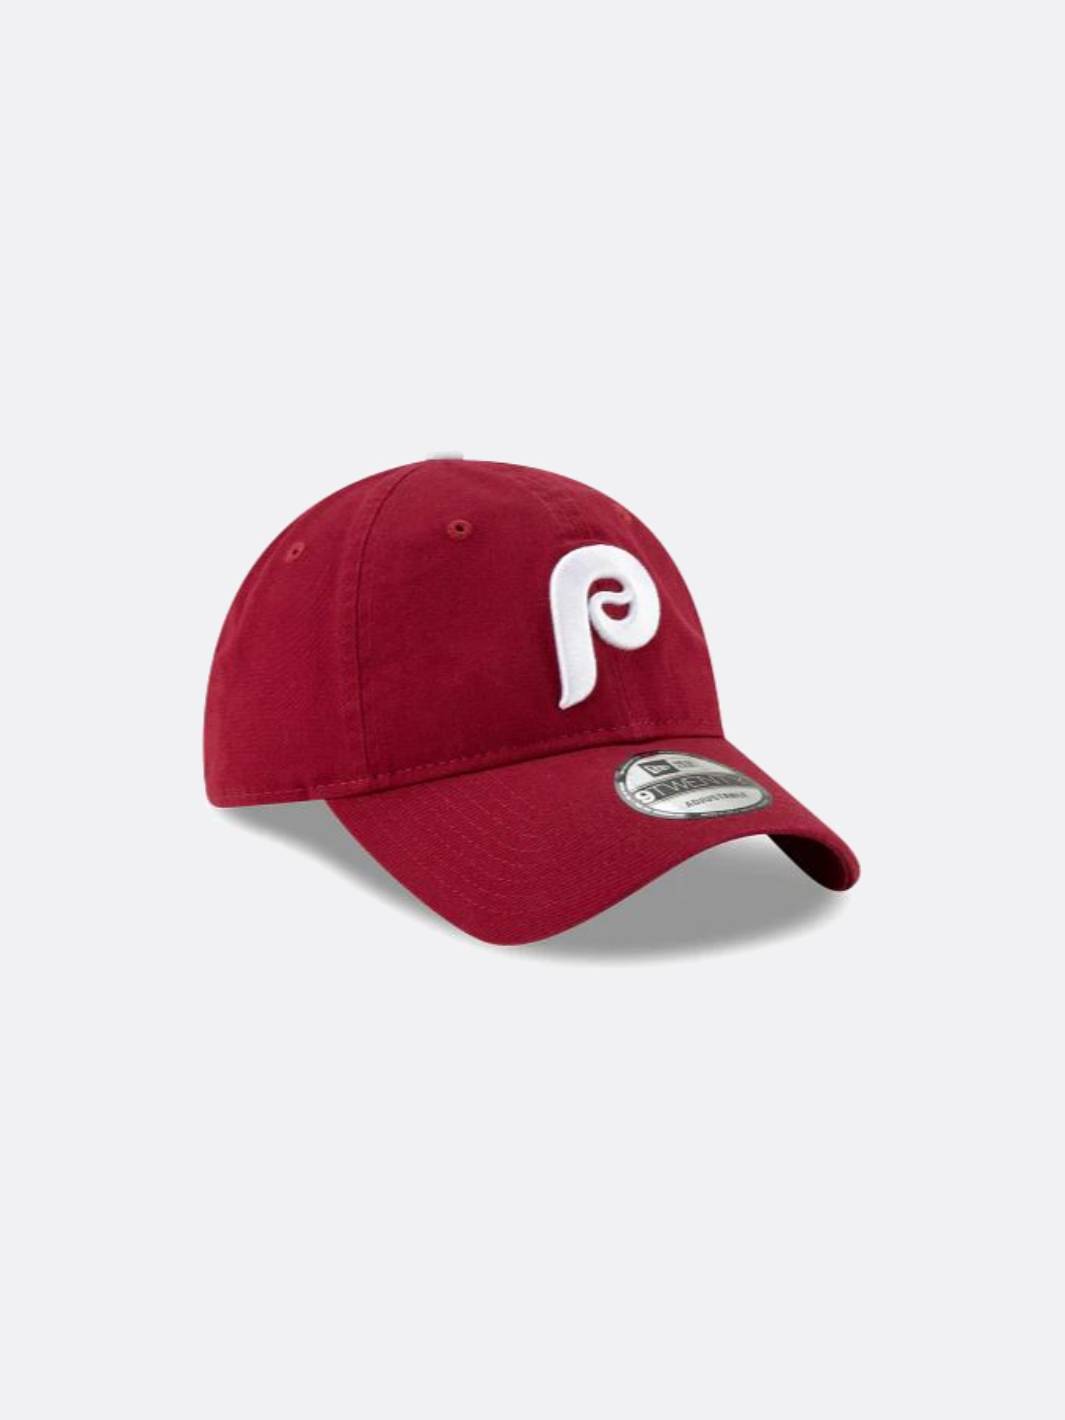 Vintage Phillies Hat Size Large